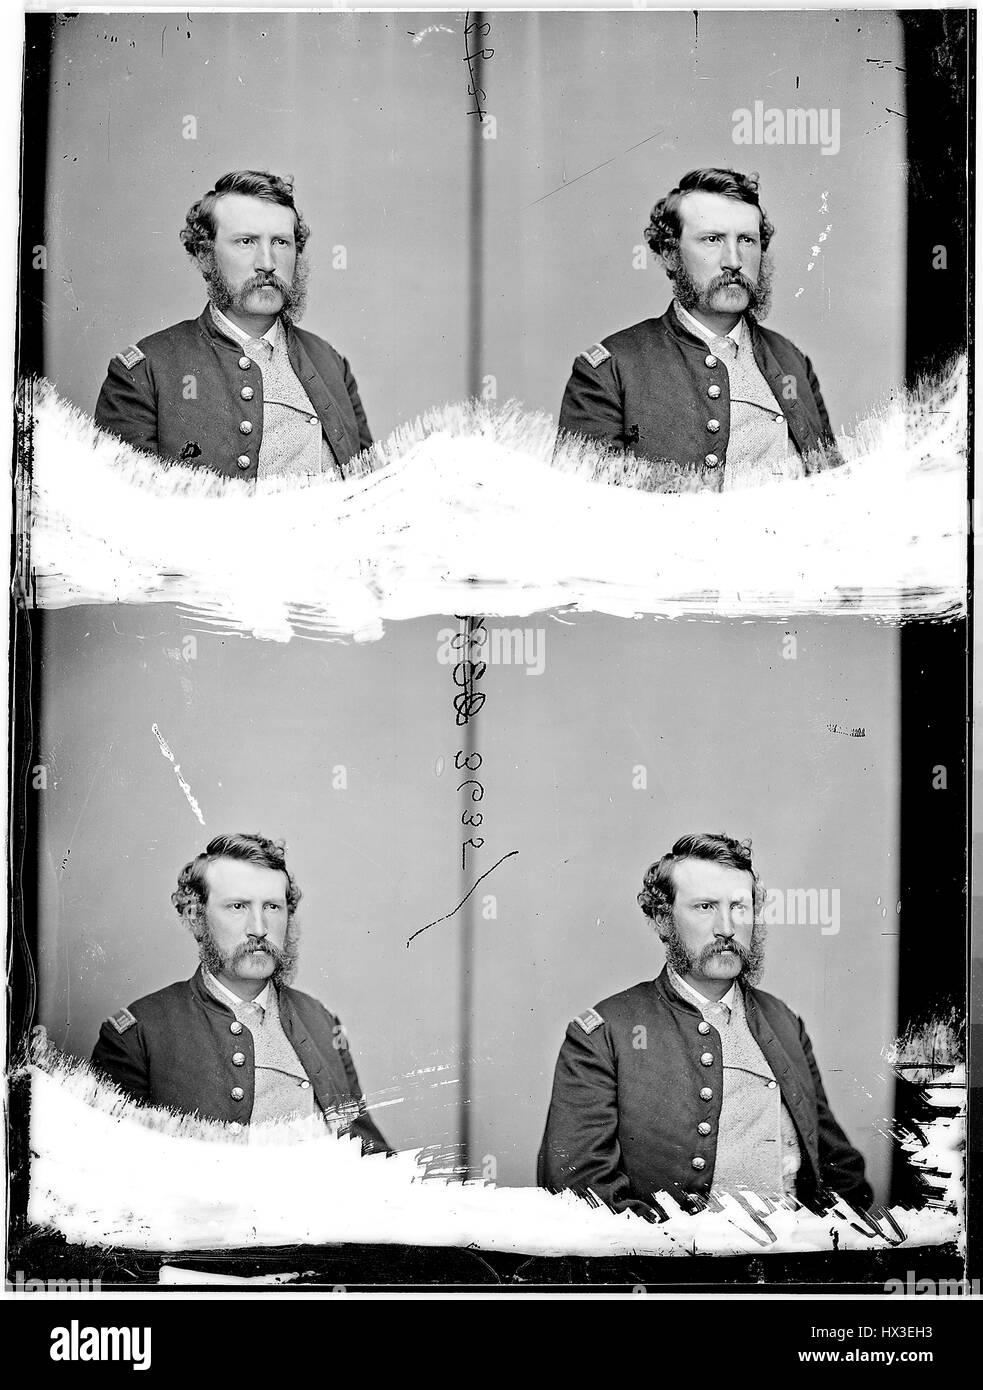 Halblängen sitzenden Porträt des Edward P Doherty, ein Offizier, die Gefangennahme von John Wilkes Booth, 1863 führte, der Bürgerkrieg. Bild mit freundlicher Genehmigung National Archives. Stockfoto